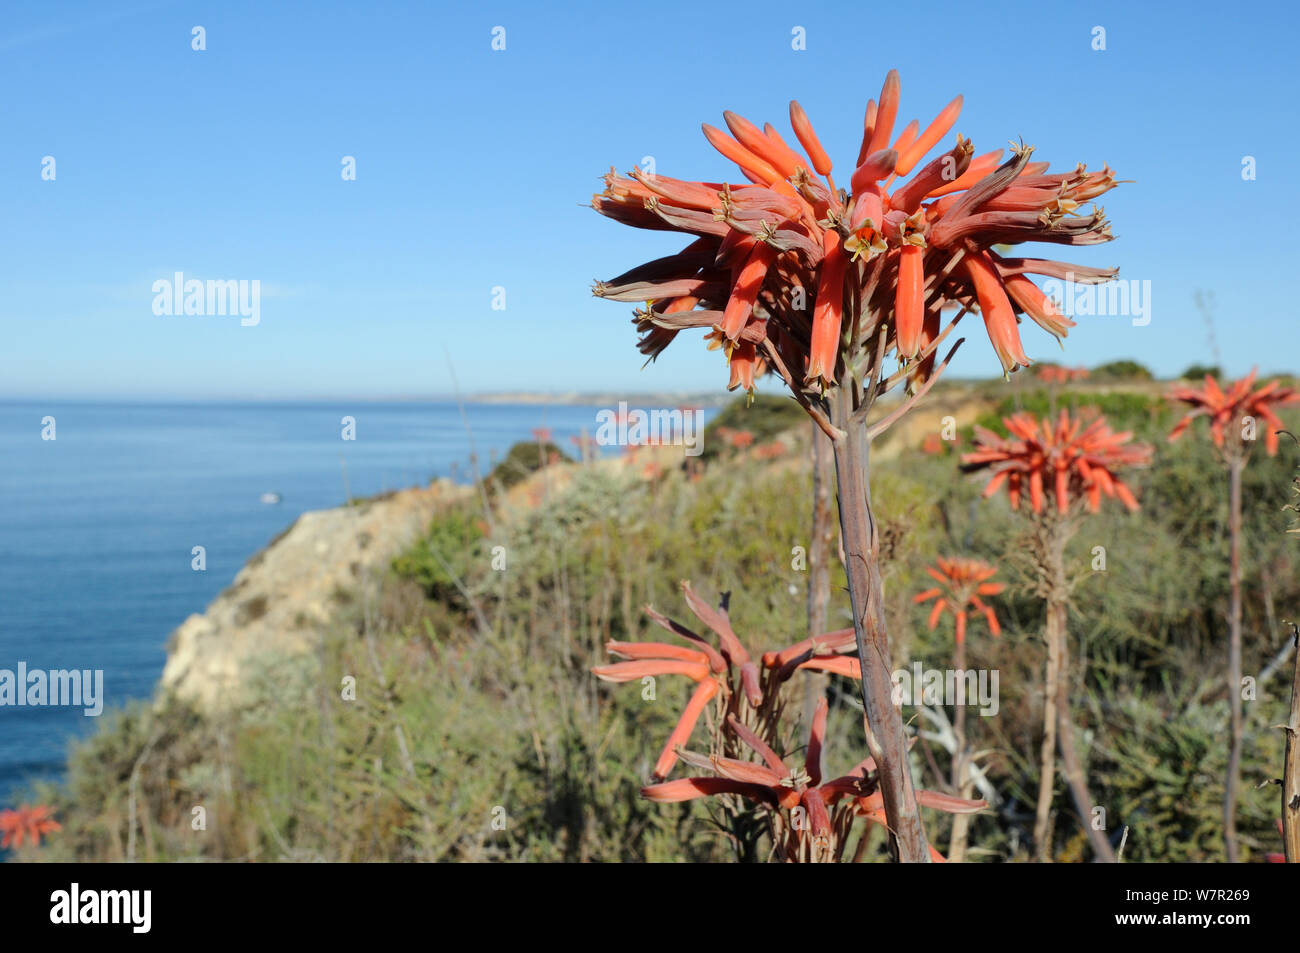 Sapone aloe (Aloe maculata / saponaria) fioritura sulla cima di una scogliera con il mare sullo sfondo. Algarve, Portogallo, Giugno. Foto Stock